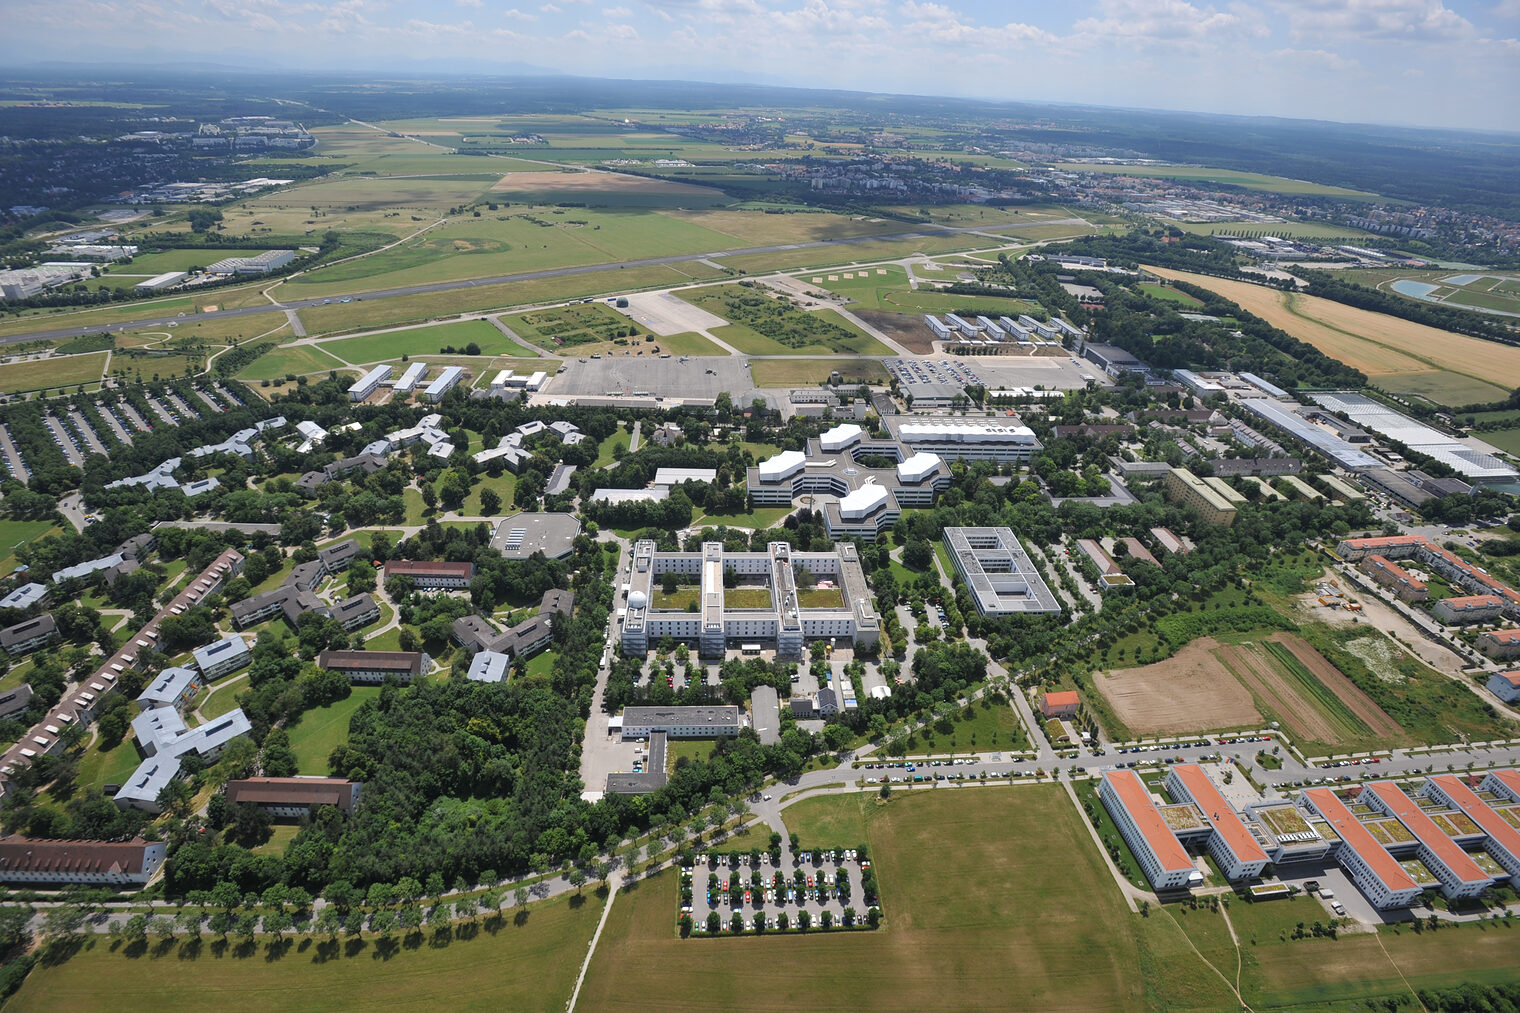 Luftbild, Universität der Bundeswehr München, Neubiberg, Handwerk trifft Forschung, Innovation, Technik, Umwelt